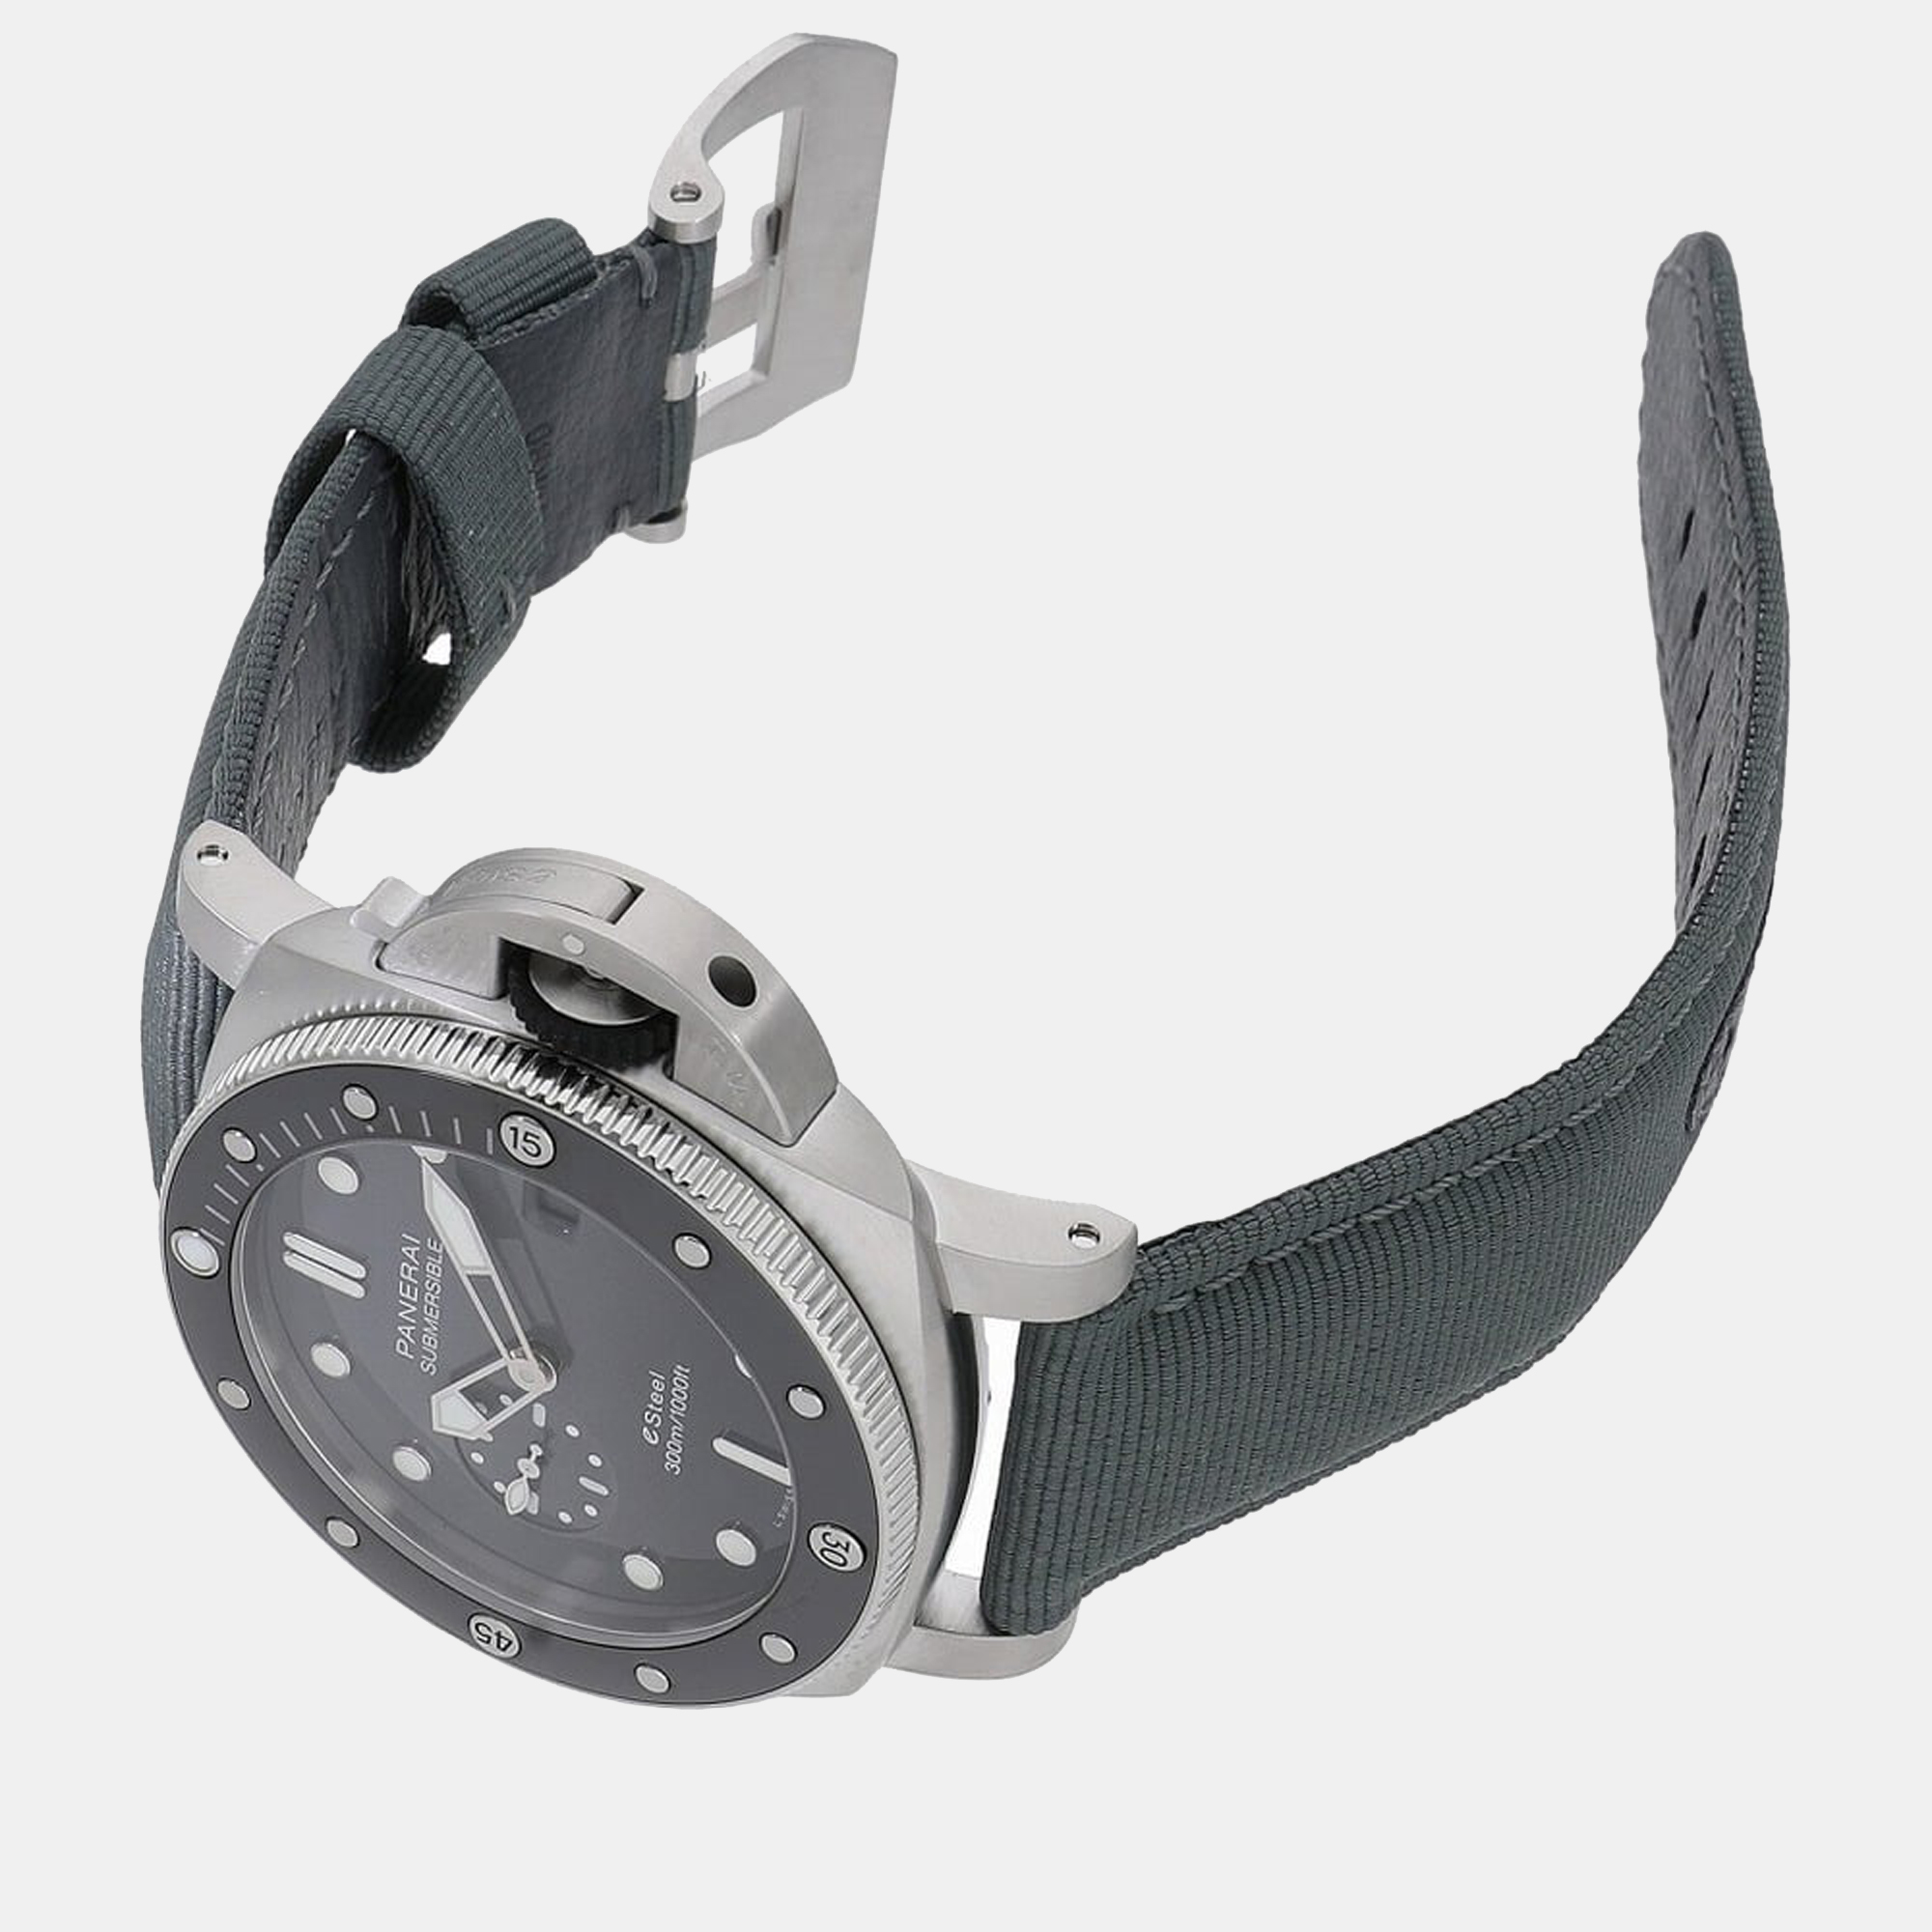 Panerai Black Stainless Steel Submersible Quaranta Quattro ESteel Grigio Roccia PAM01288 Automatic Men's Wristwatch 44 Mm